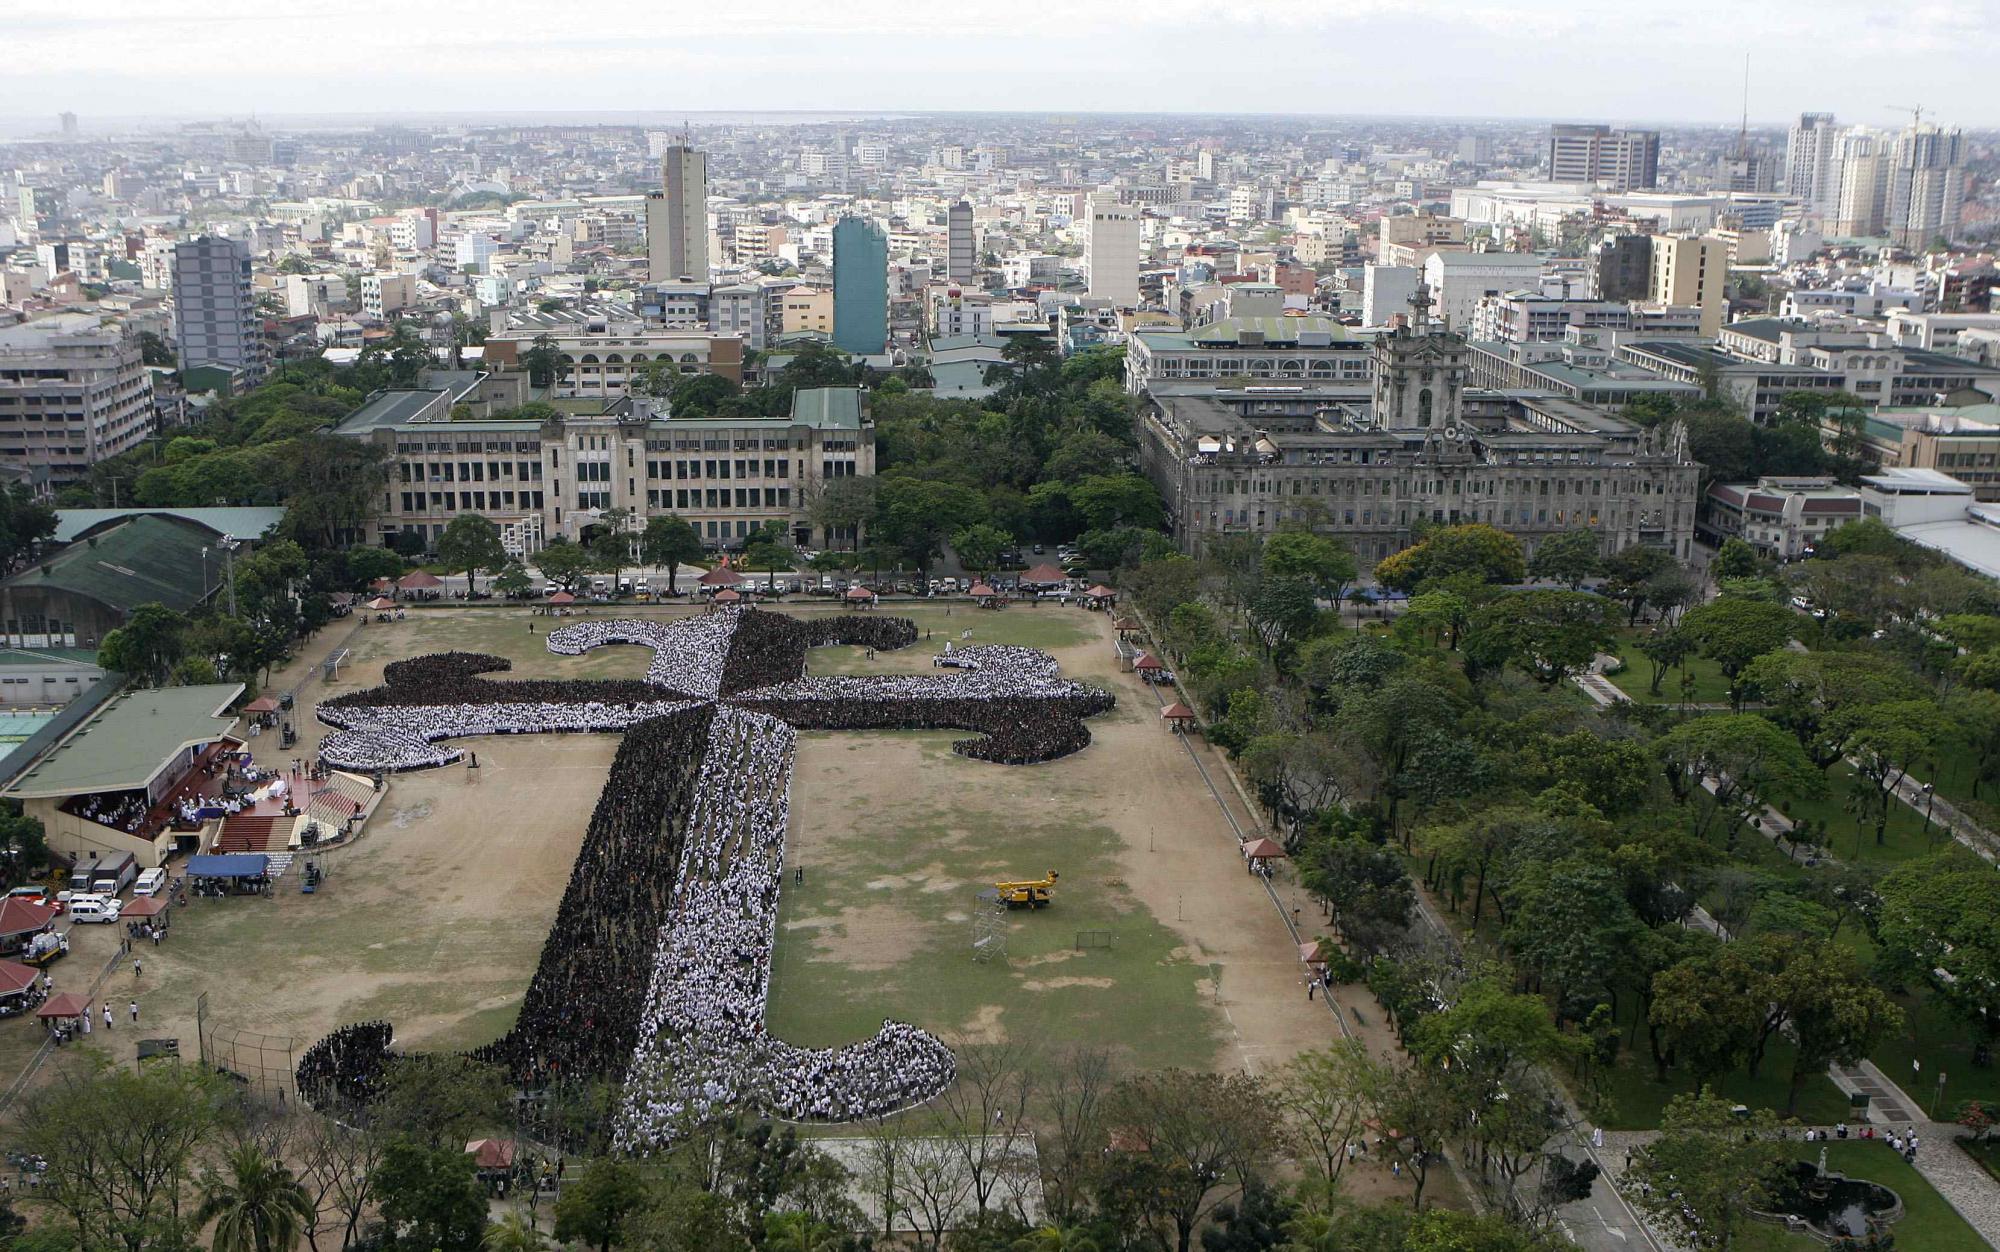 菲律宾两万师生将打破“世界最大人体十字架”纪录